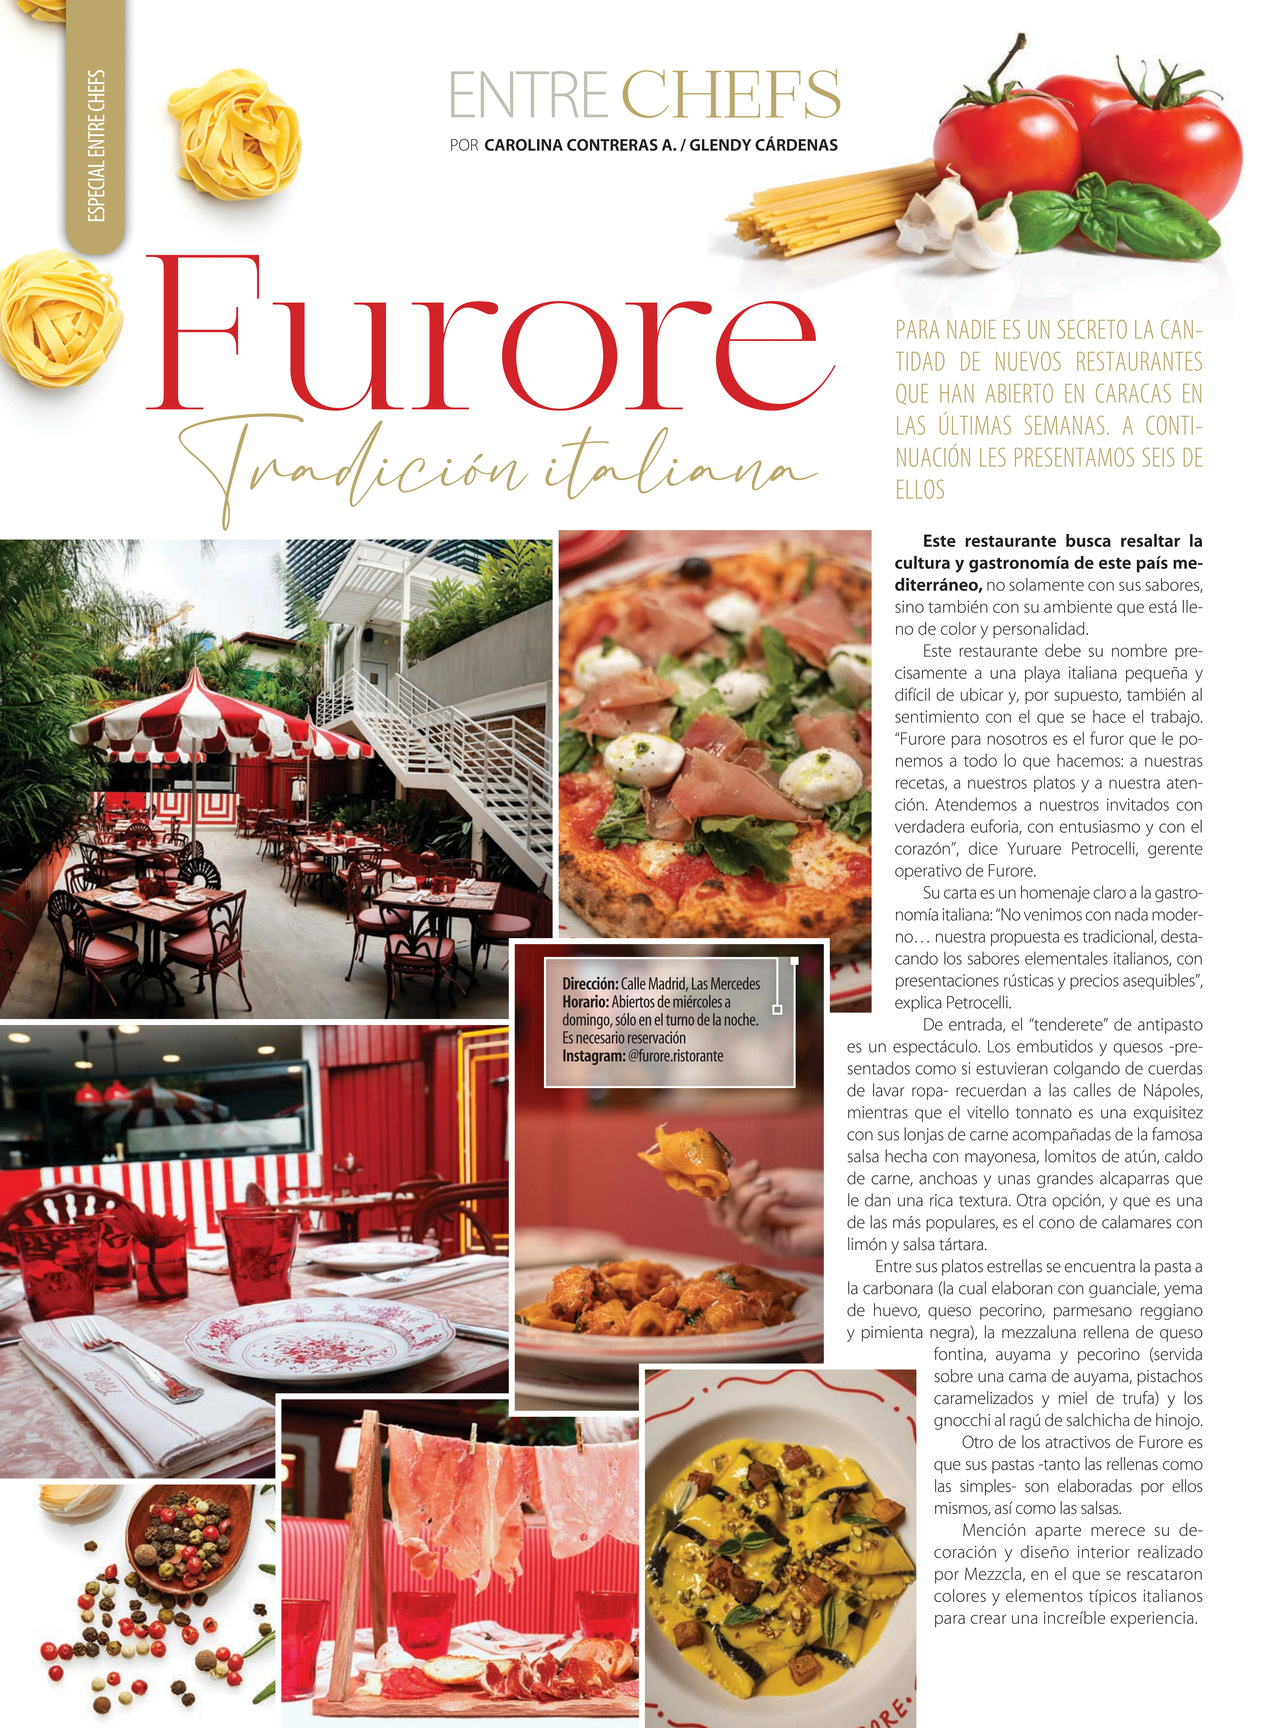 101-REV Entre Chef Furore Tradicion Italiana